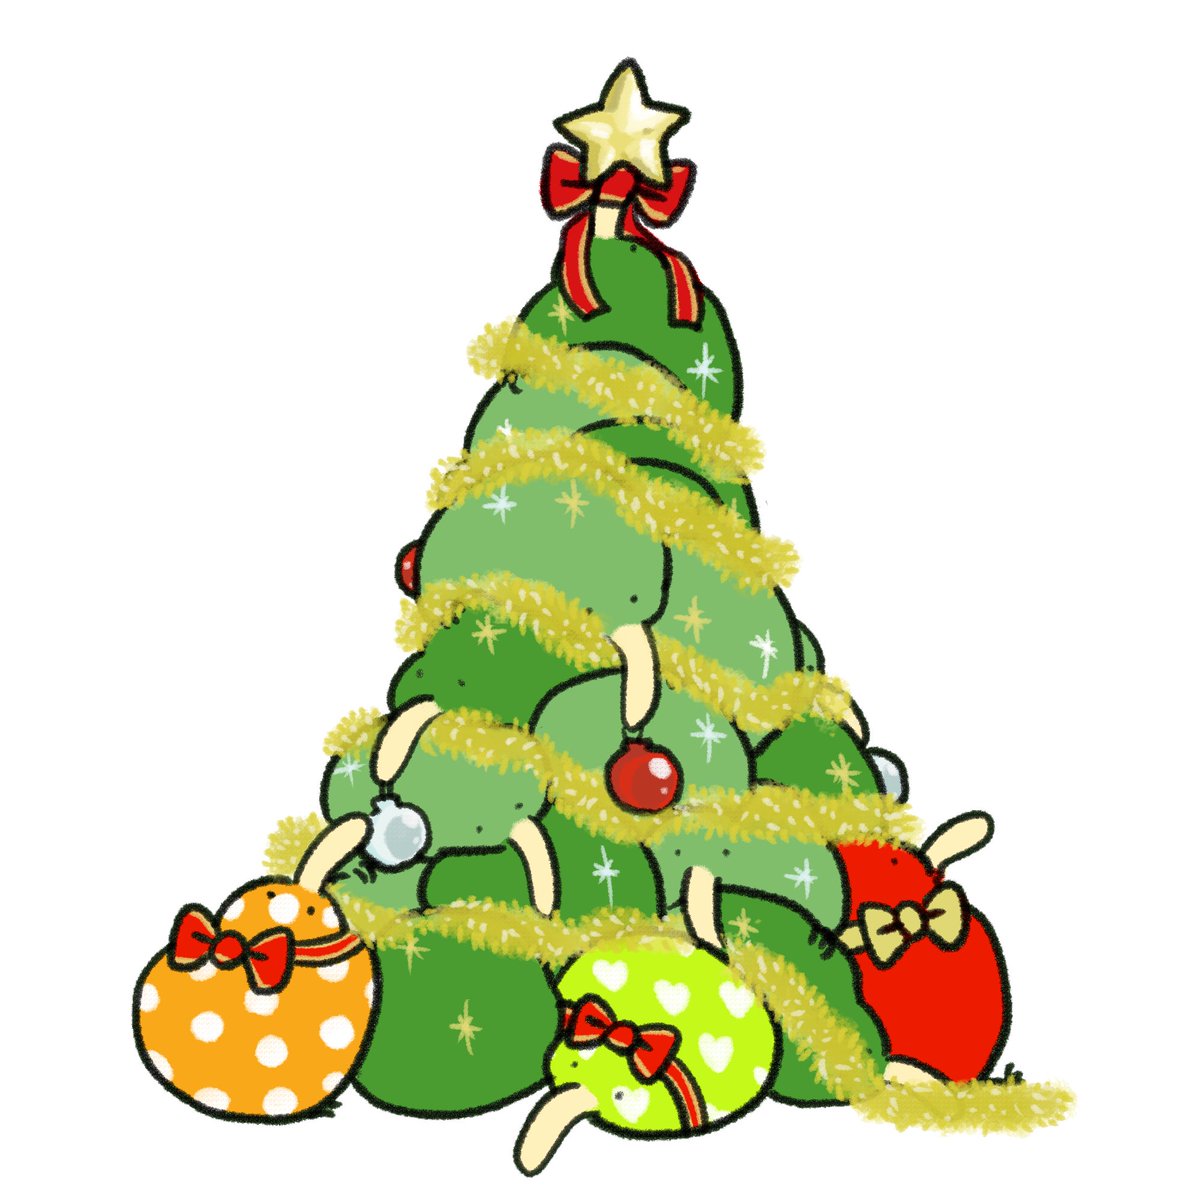 「#クリスマスツリーの日 」|きう山🥝新スタンプ発売🕺のイラスト